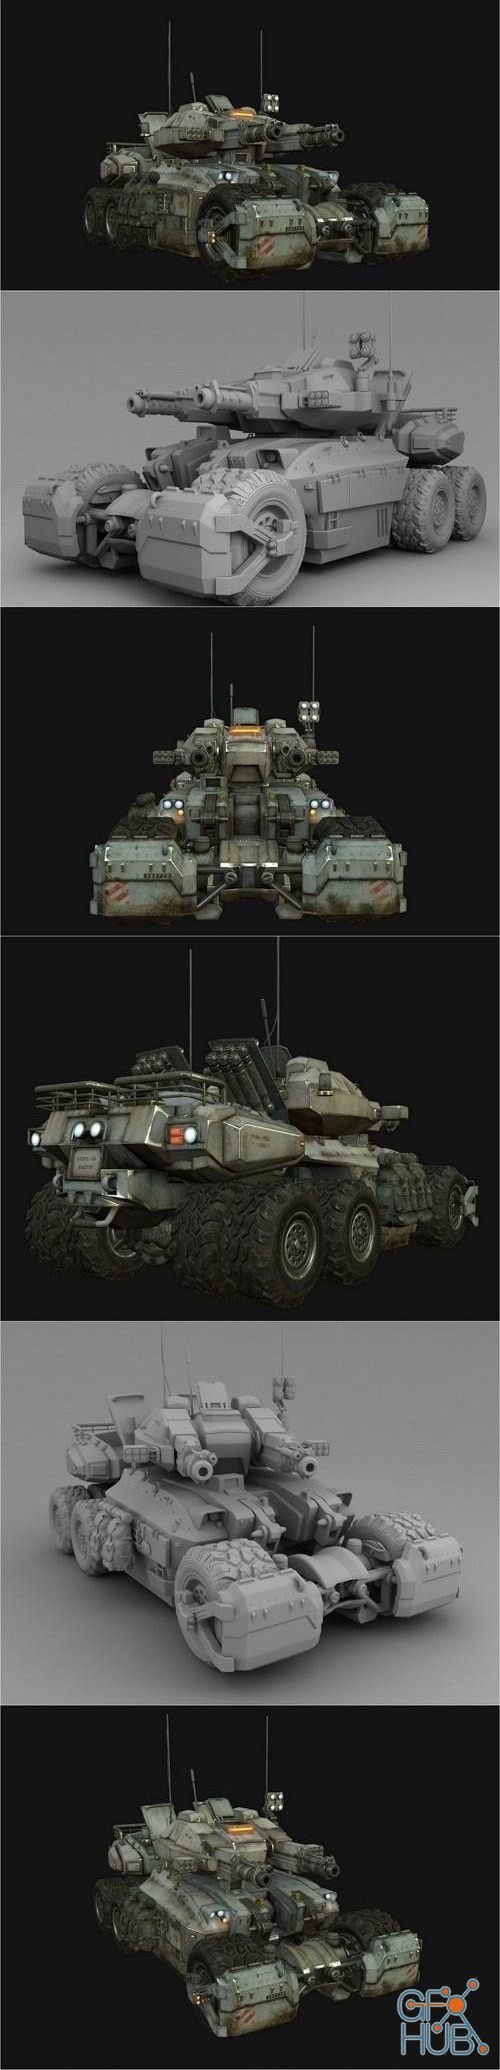 6 Wheels Sc-FI MCV Tank